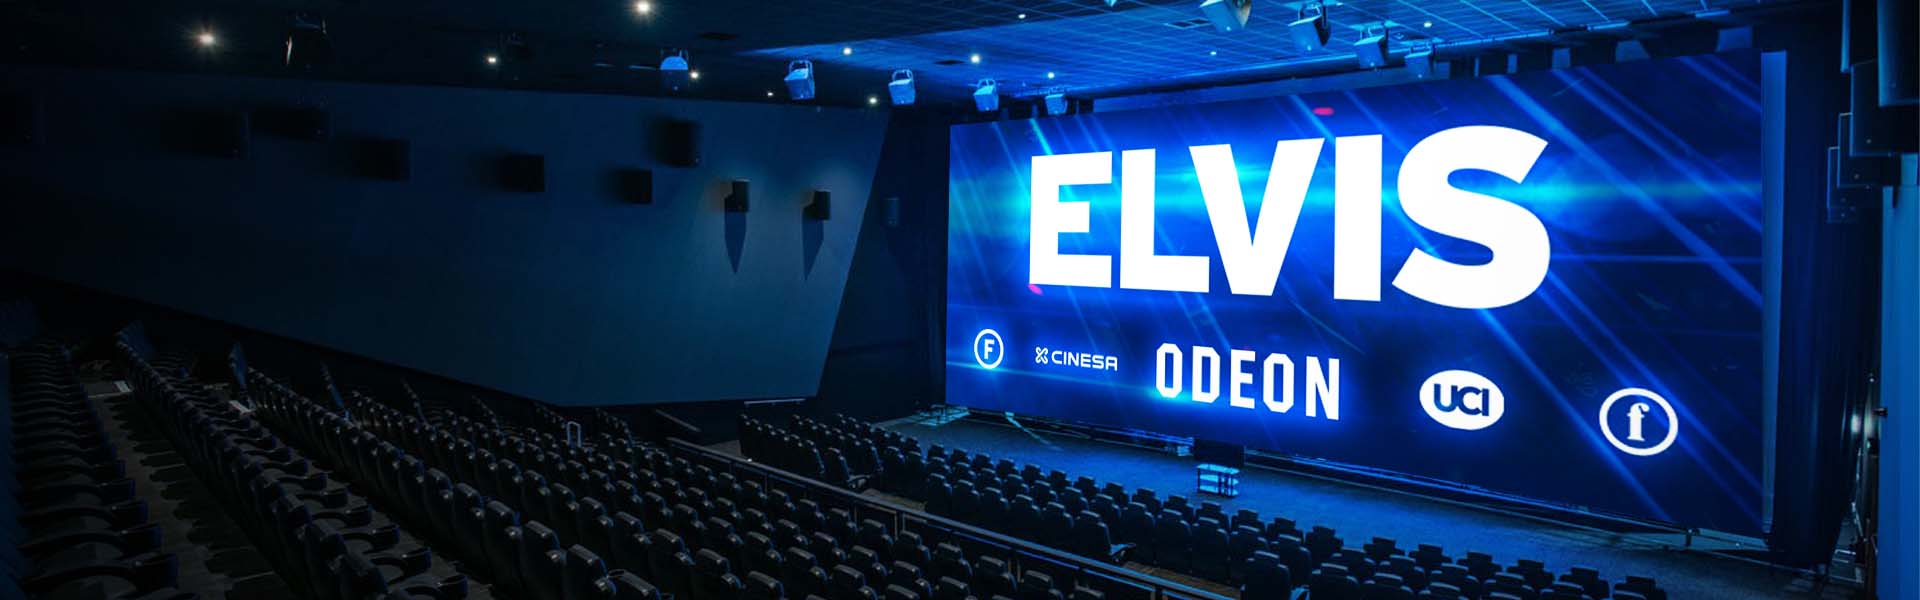 ODEON Cinemas Group appoints elvis as pan-European lead creative agency